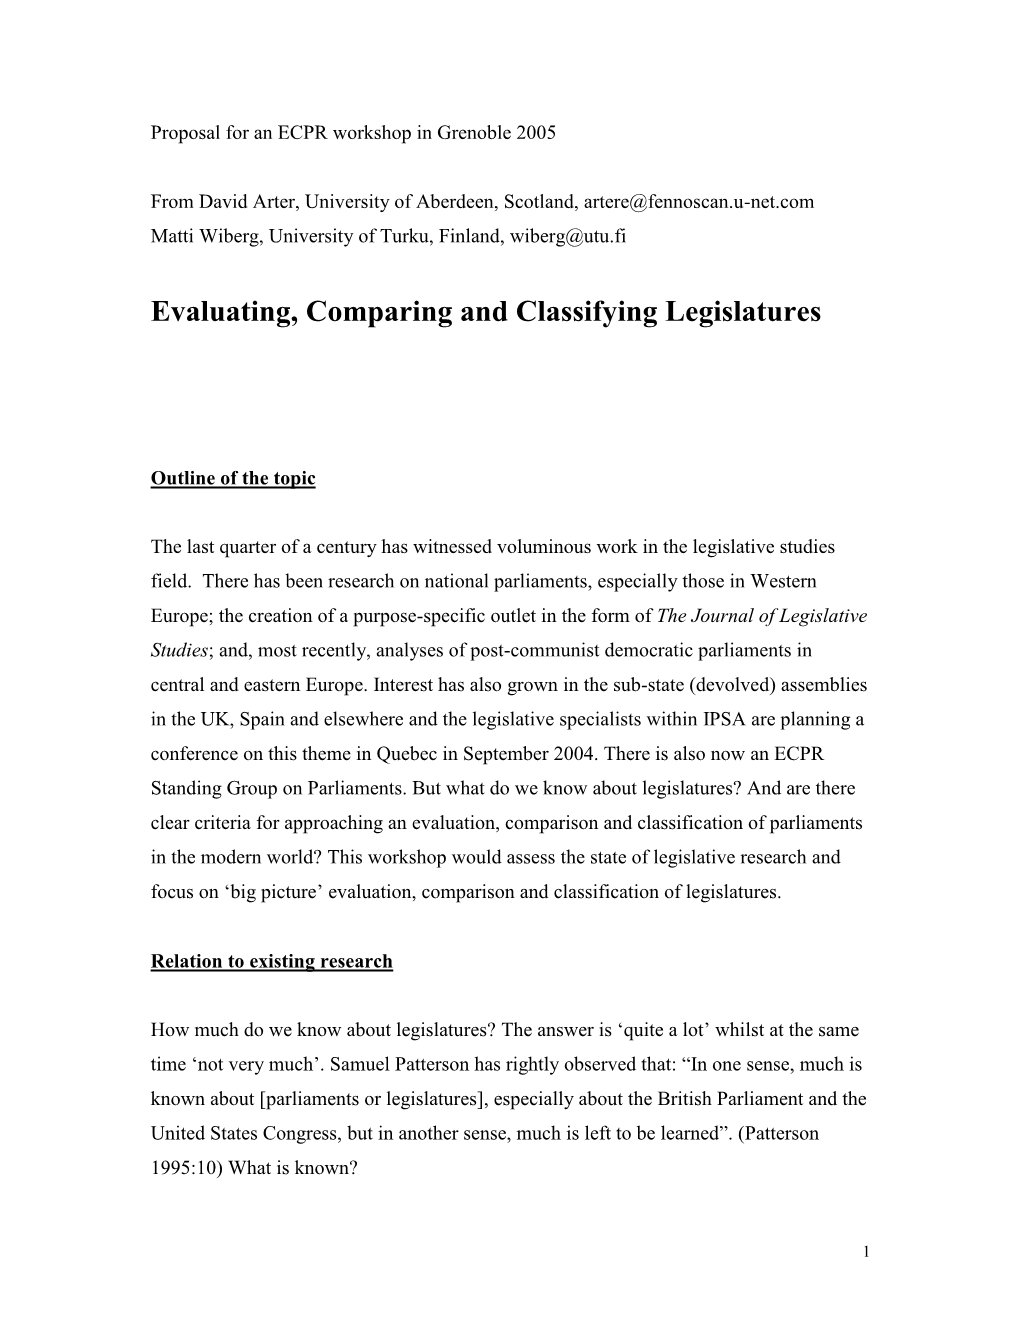 Evaluating, Comparing and Classifying Legislatures